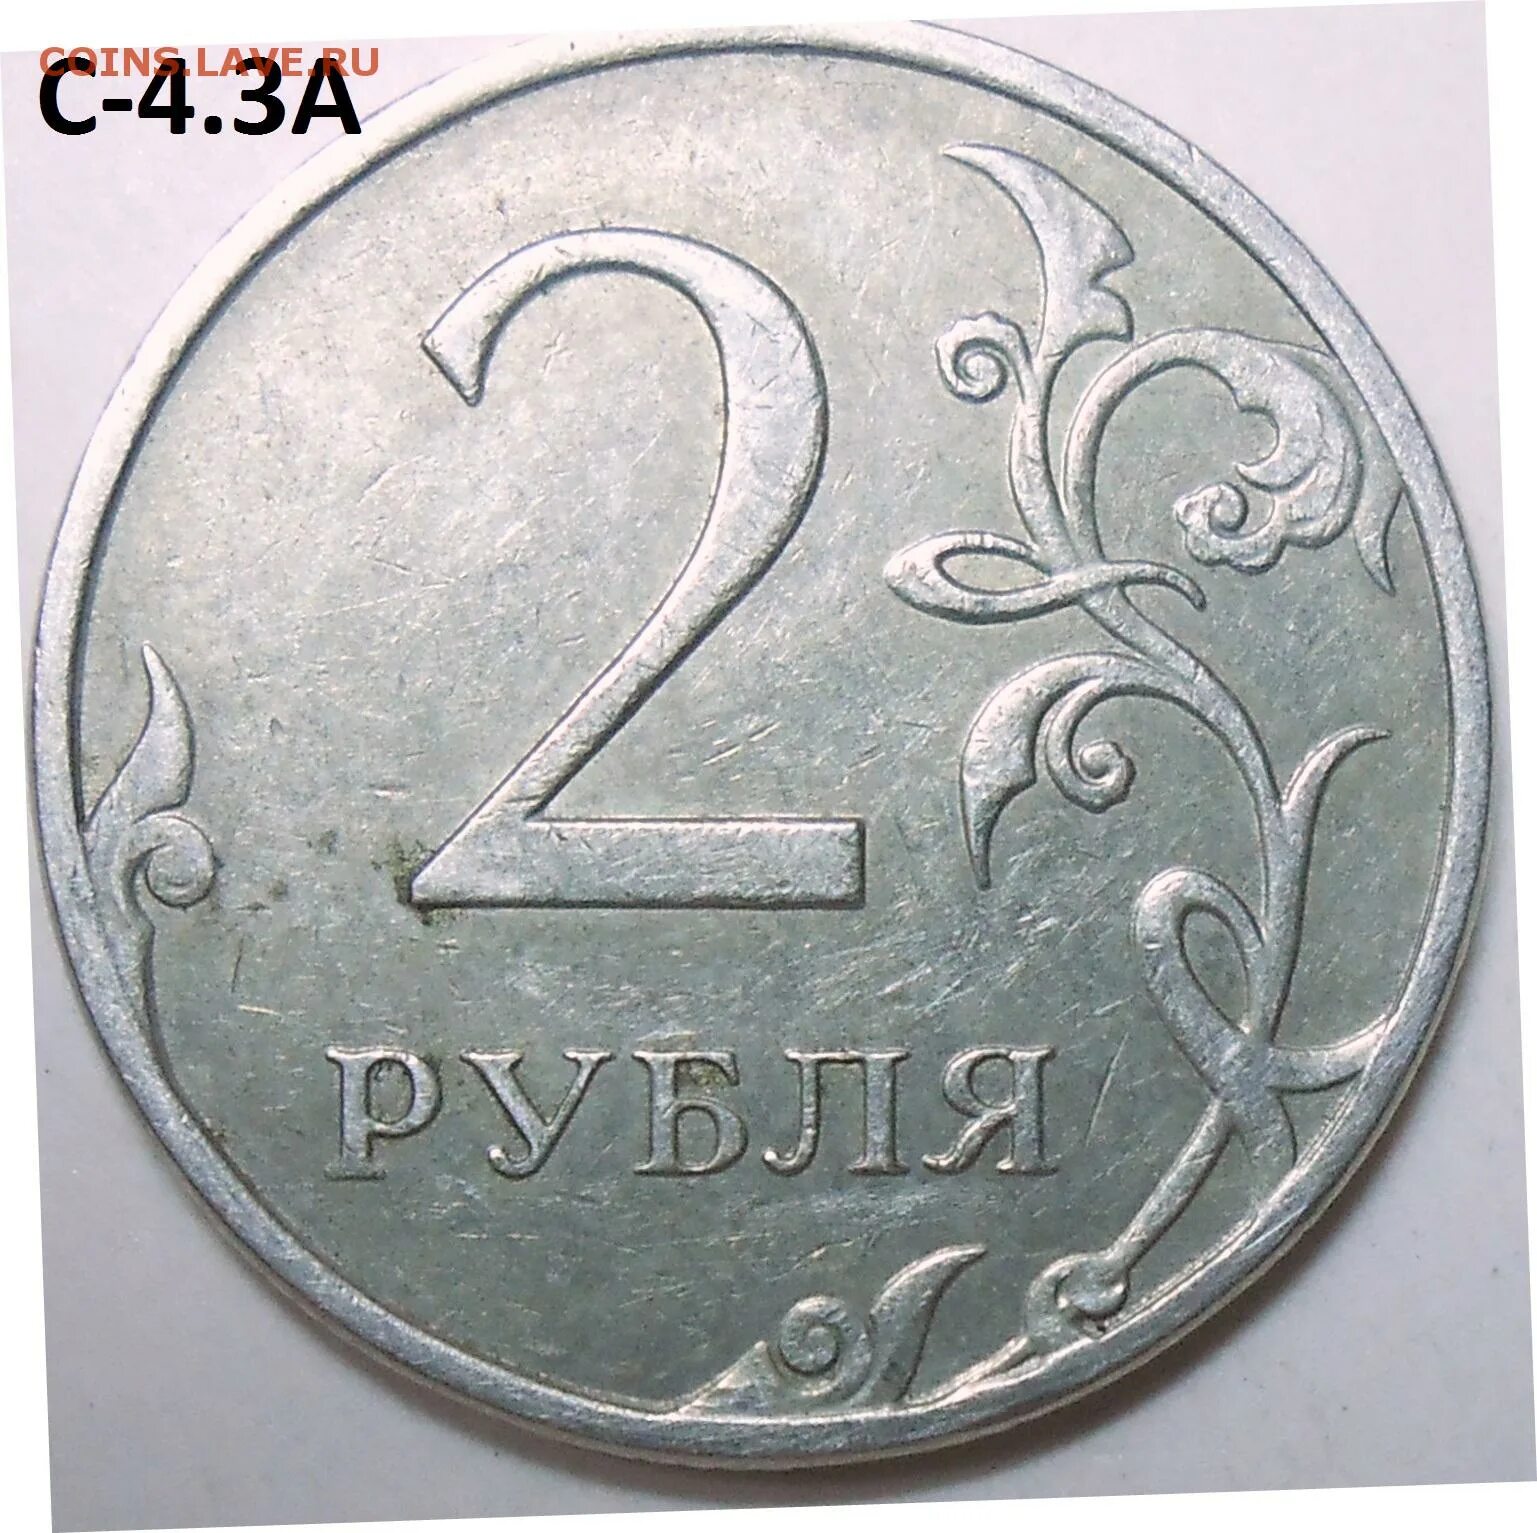 22 апр 16. 2 Рубля 1997 ММД. 2 Руб 1997 ММД. 2 Рубля 1997 СПДМ золото. Редкий ли 2 рубль 1997.